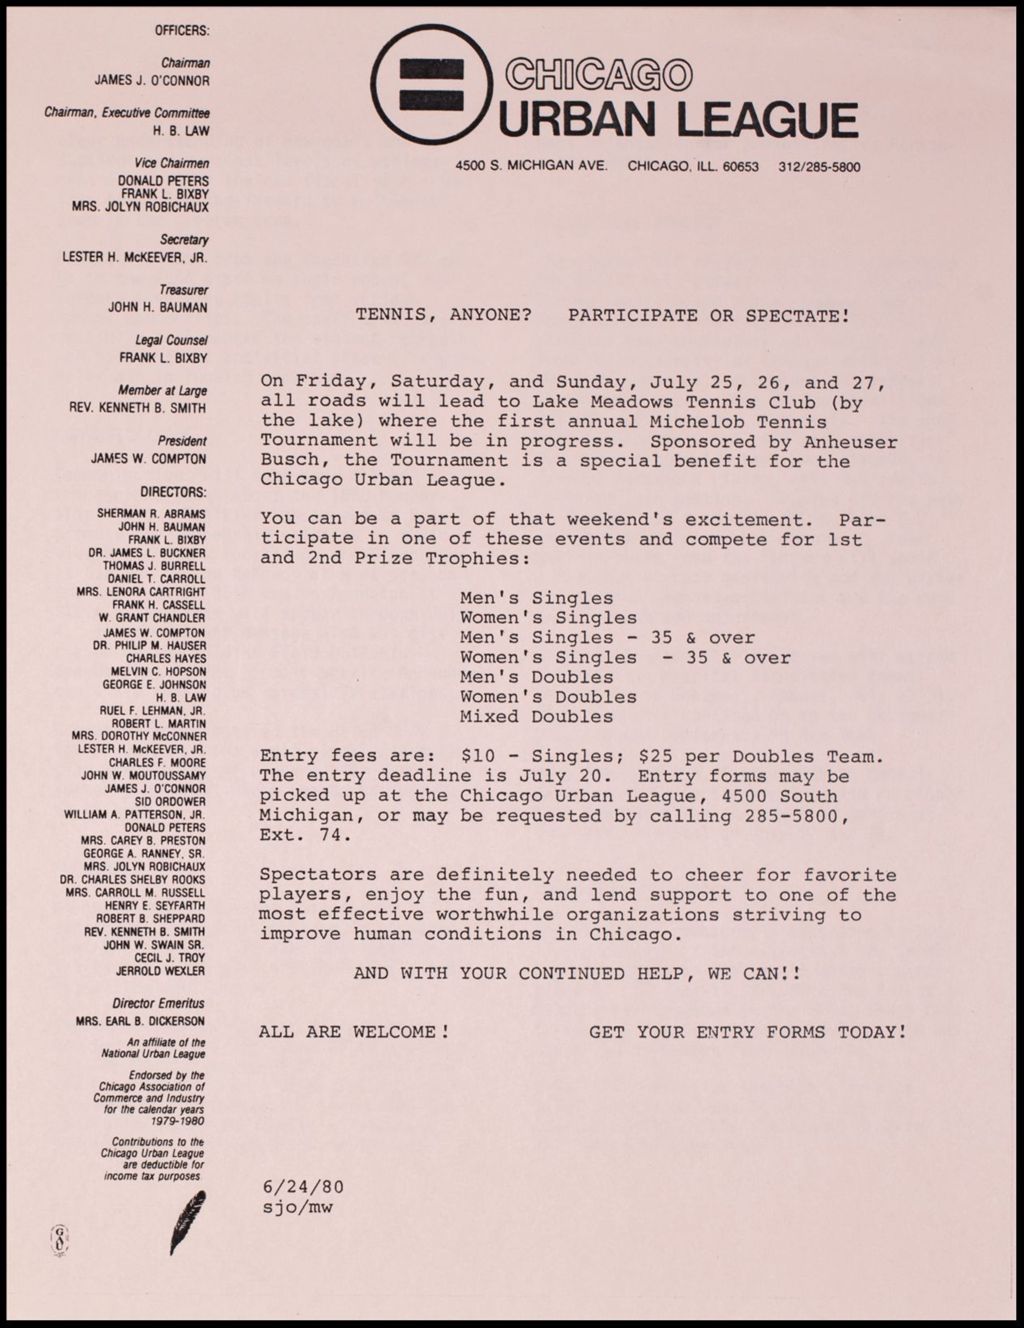 CUL Employee Newsletter "Just Between Us", 1980 (Folder IV-738)